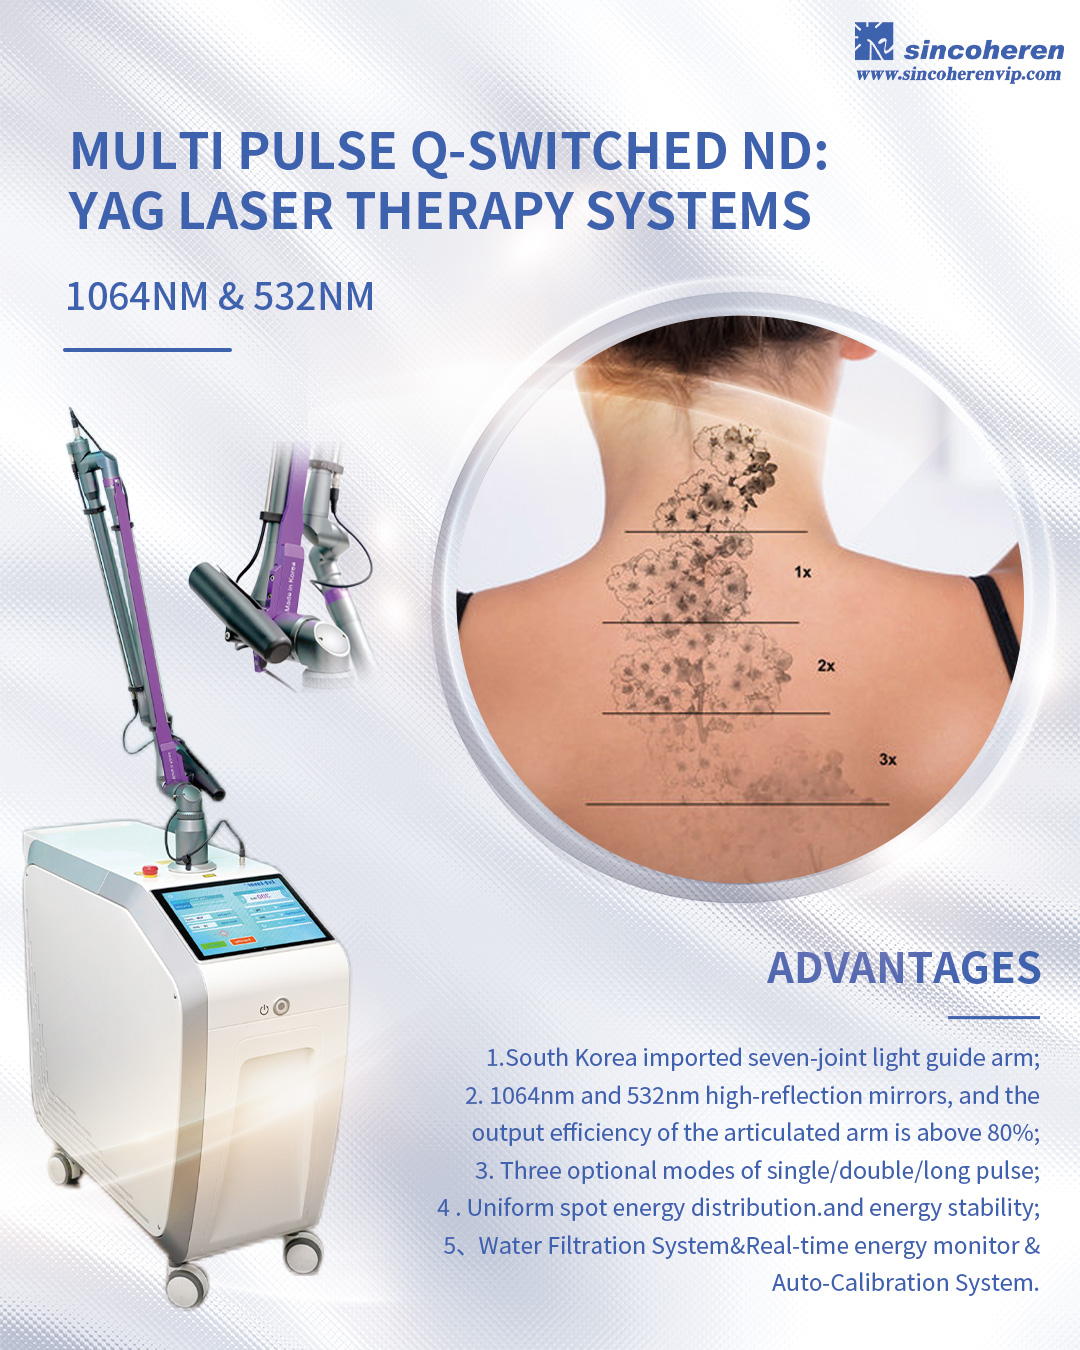 Q-Switched Nd:yag Laser: Perawatan Efektif untuk Menghilangkan Pigmen dan Menghilangkan Tato